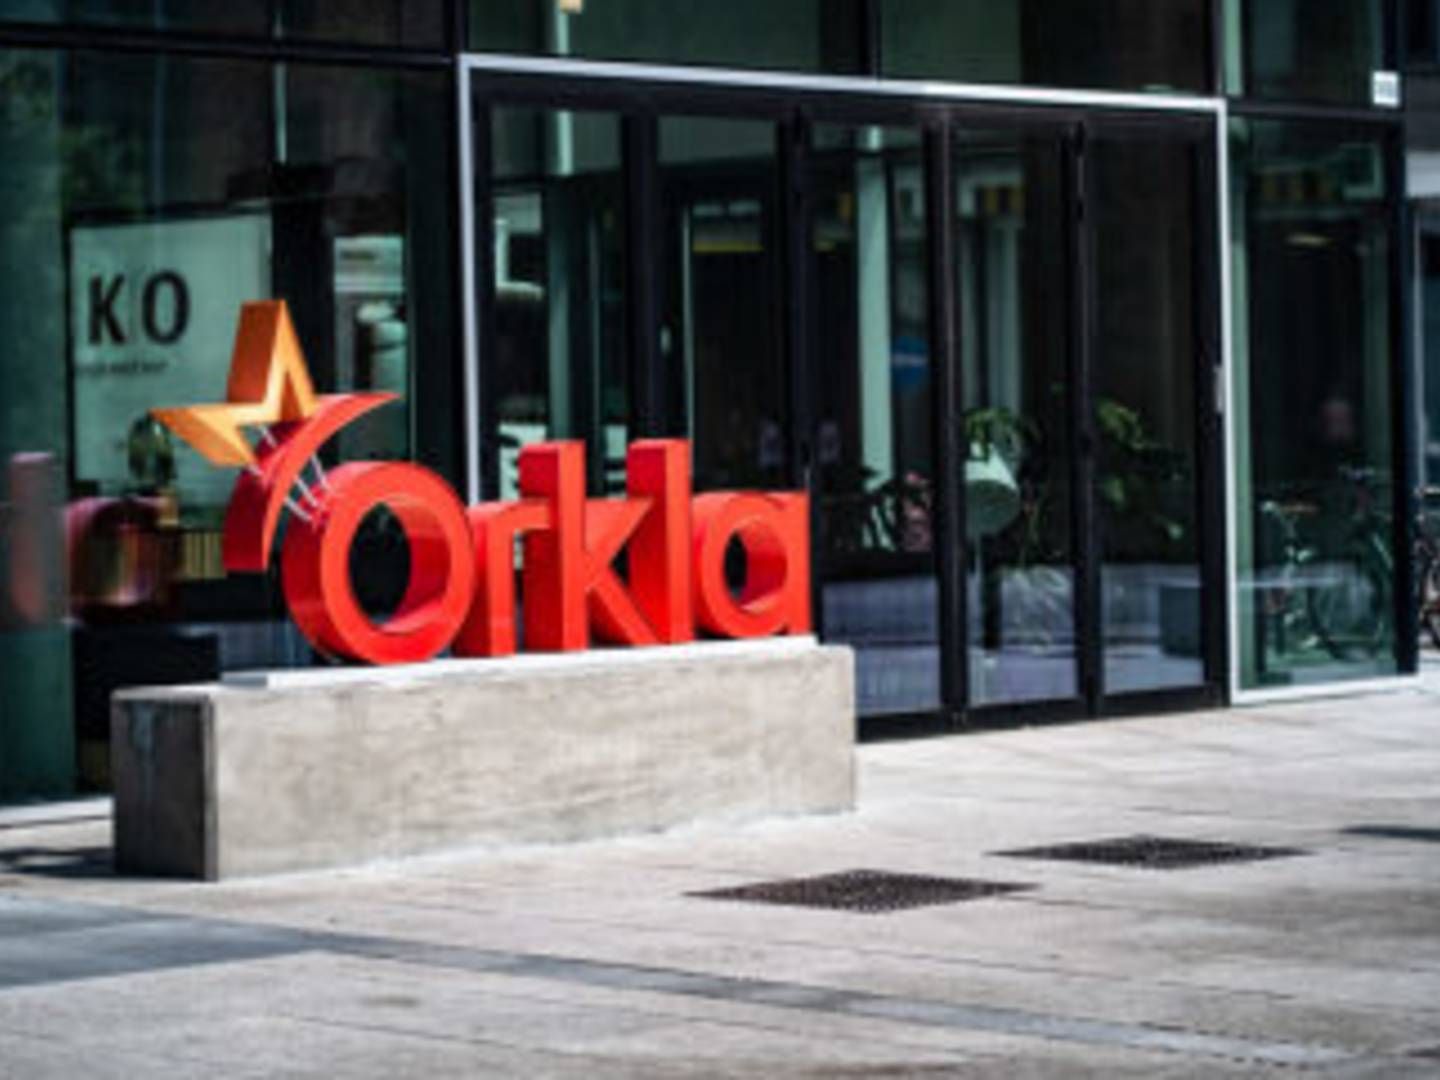 Selvom Orkla ikke kan komme med yderligere detaljer, forventer virksomheden prisstigninger på flere produkter. | Foto: PR / Orkla